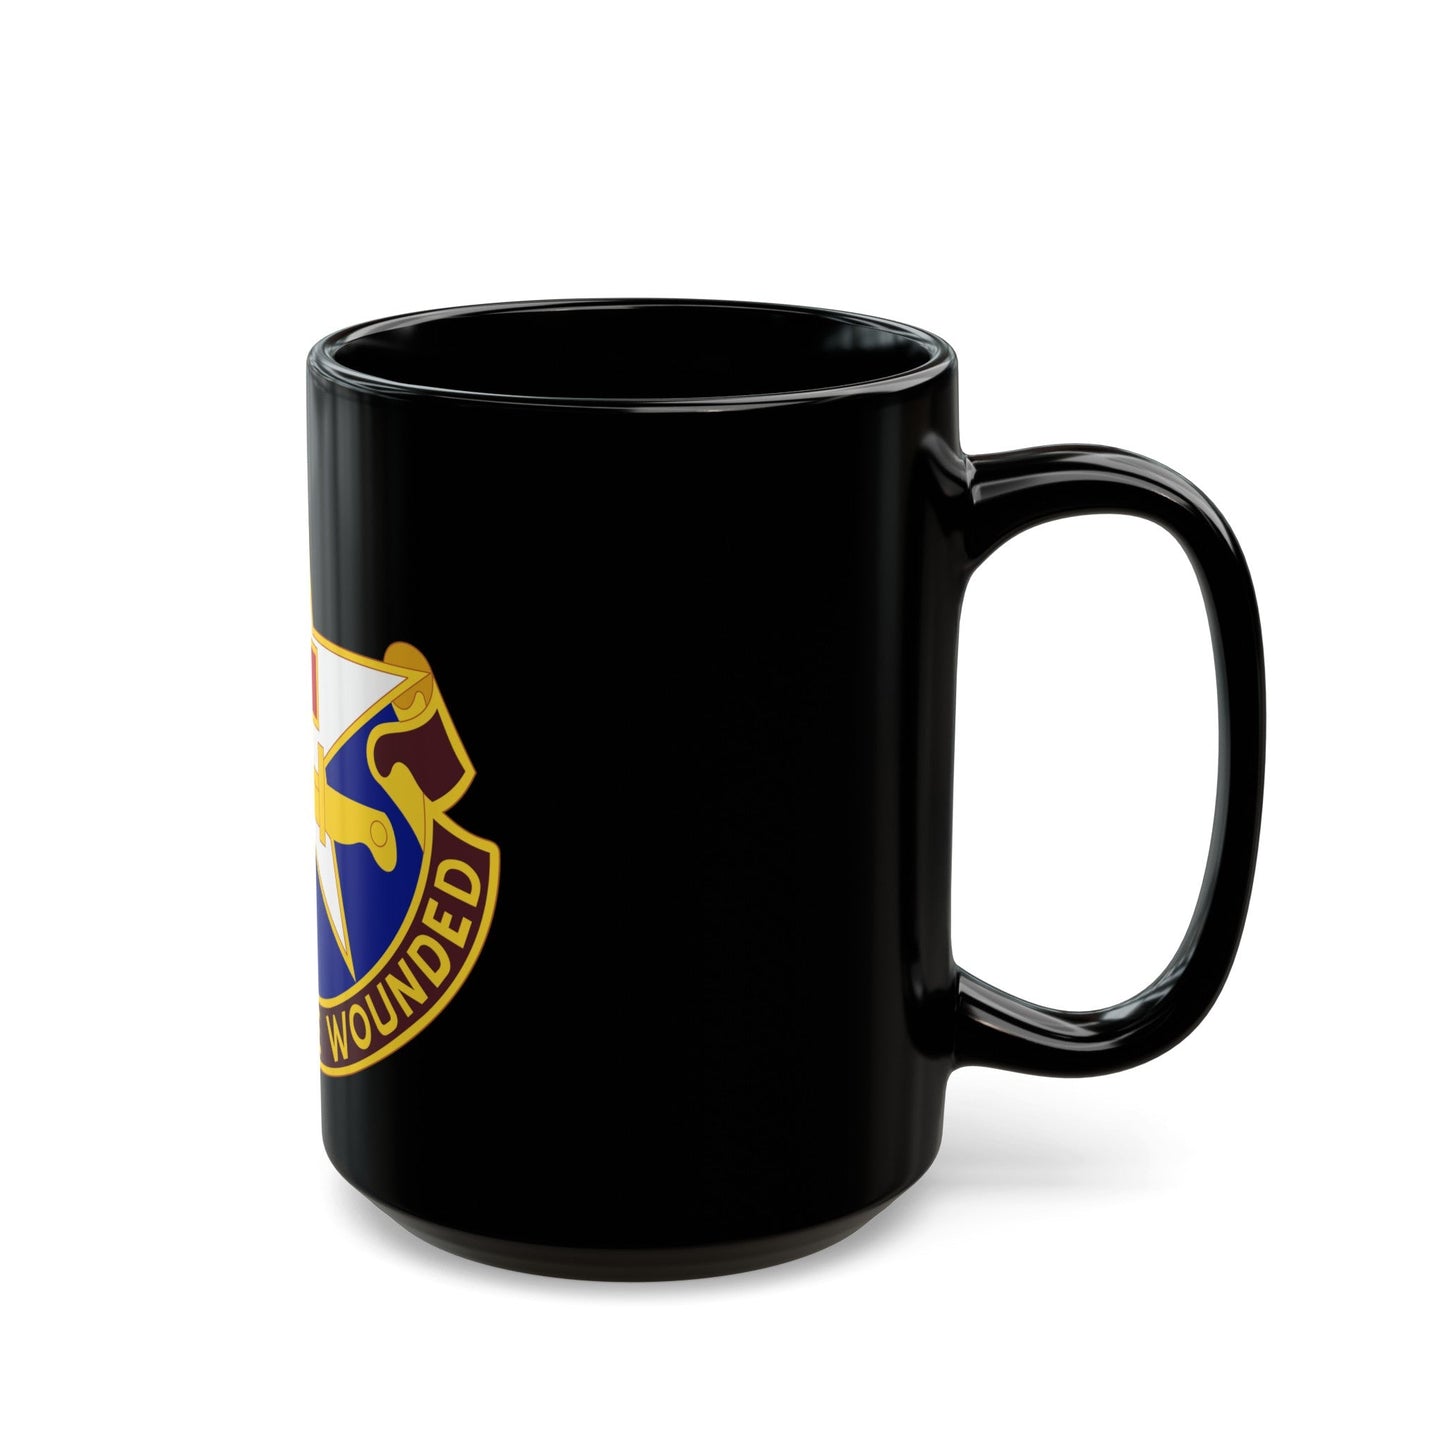 111 Medical Battalion (U.S. Army) Black Coffee Mug-The Sticker Space